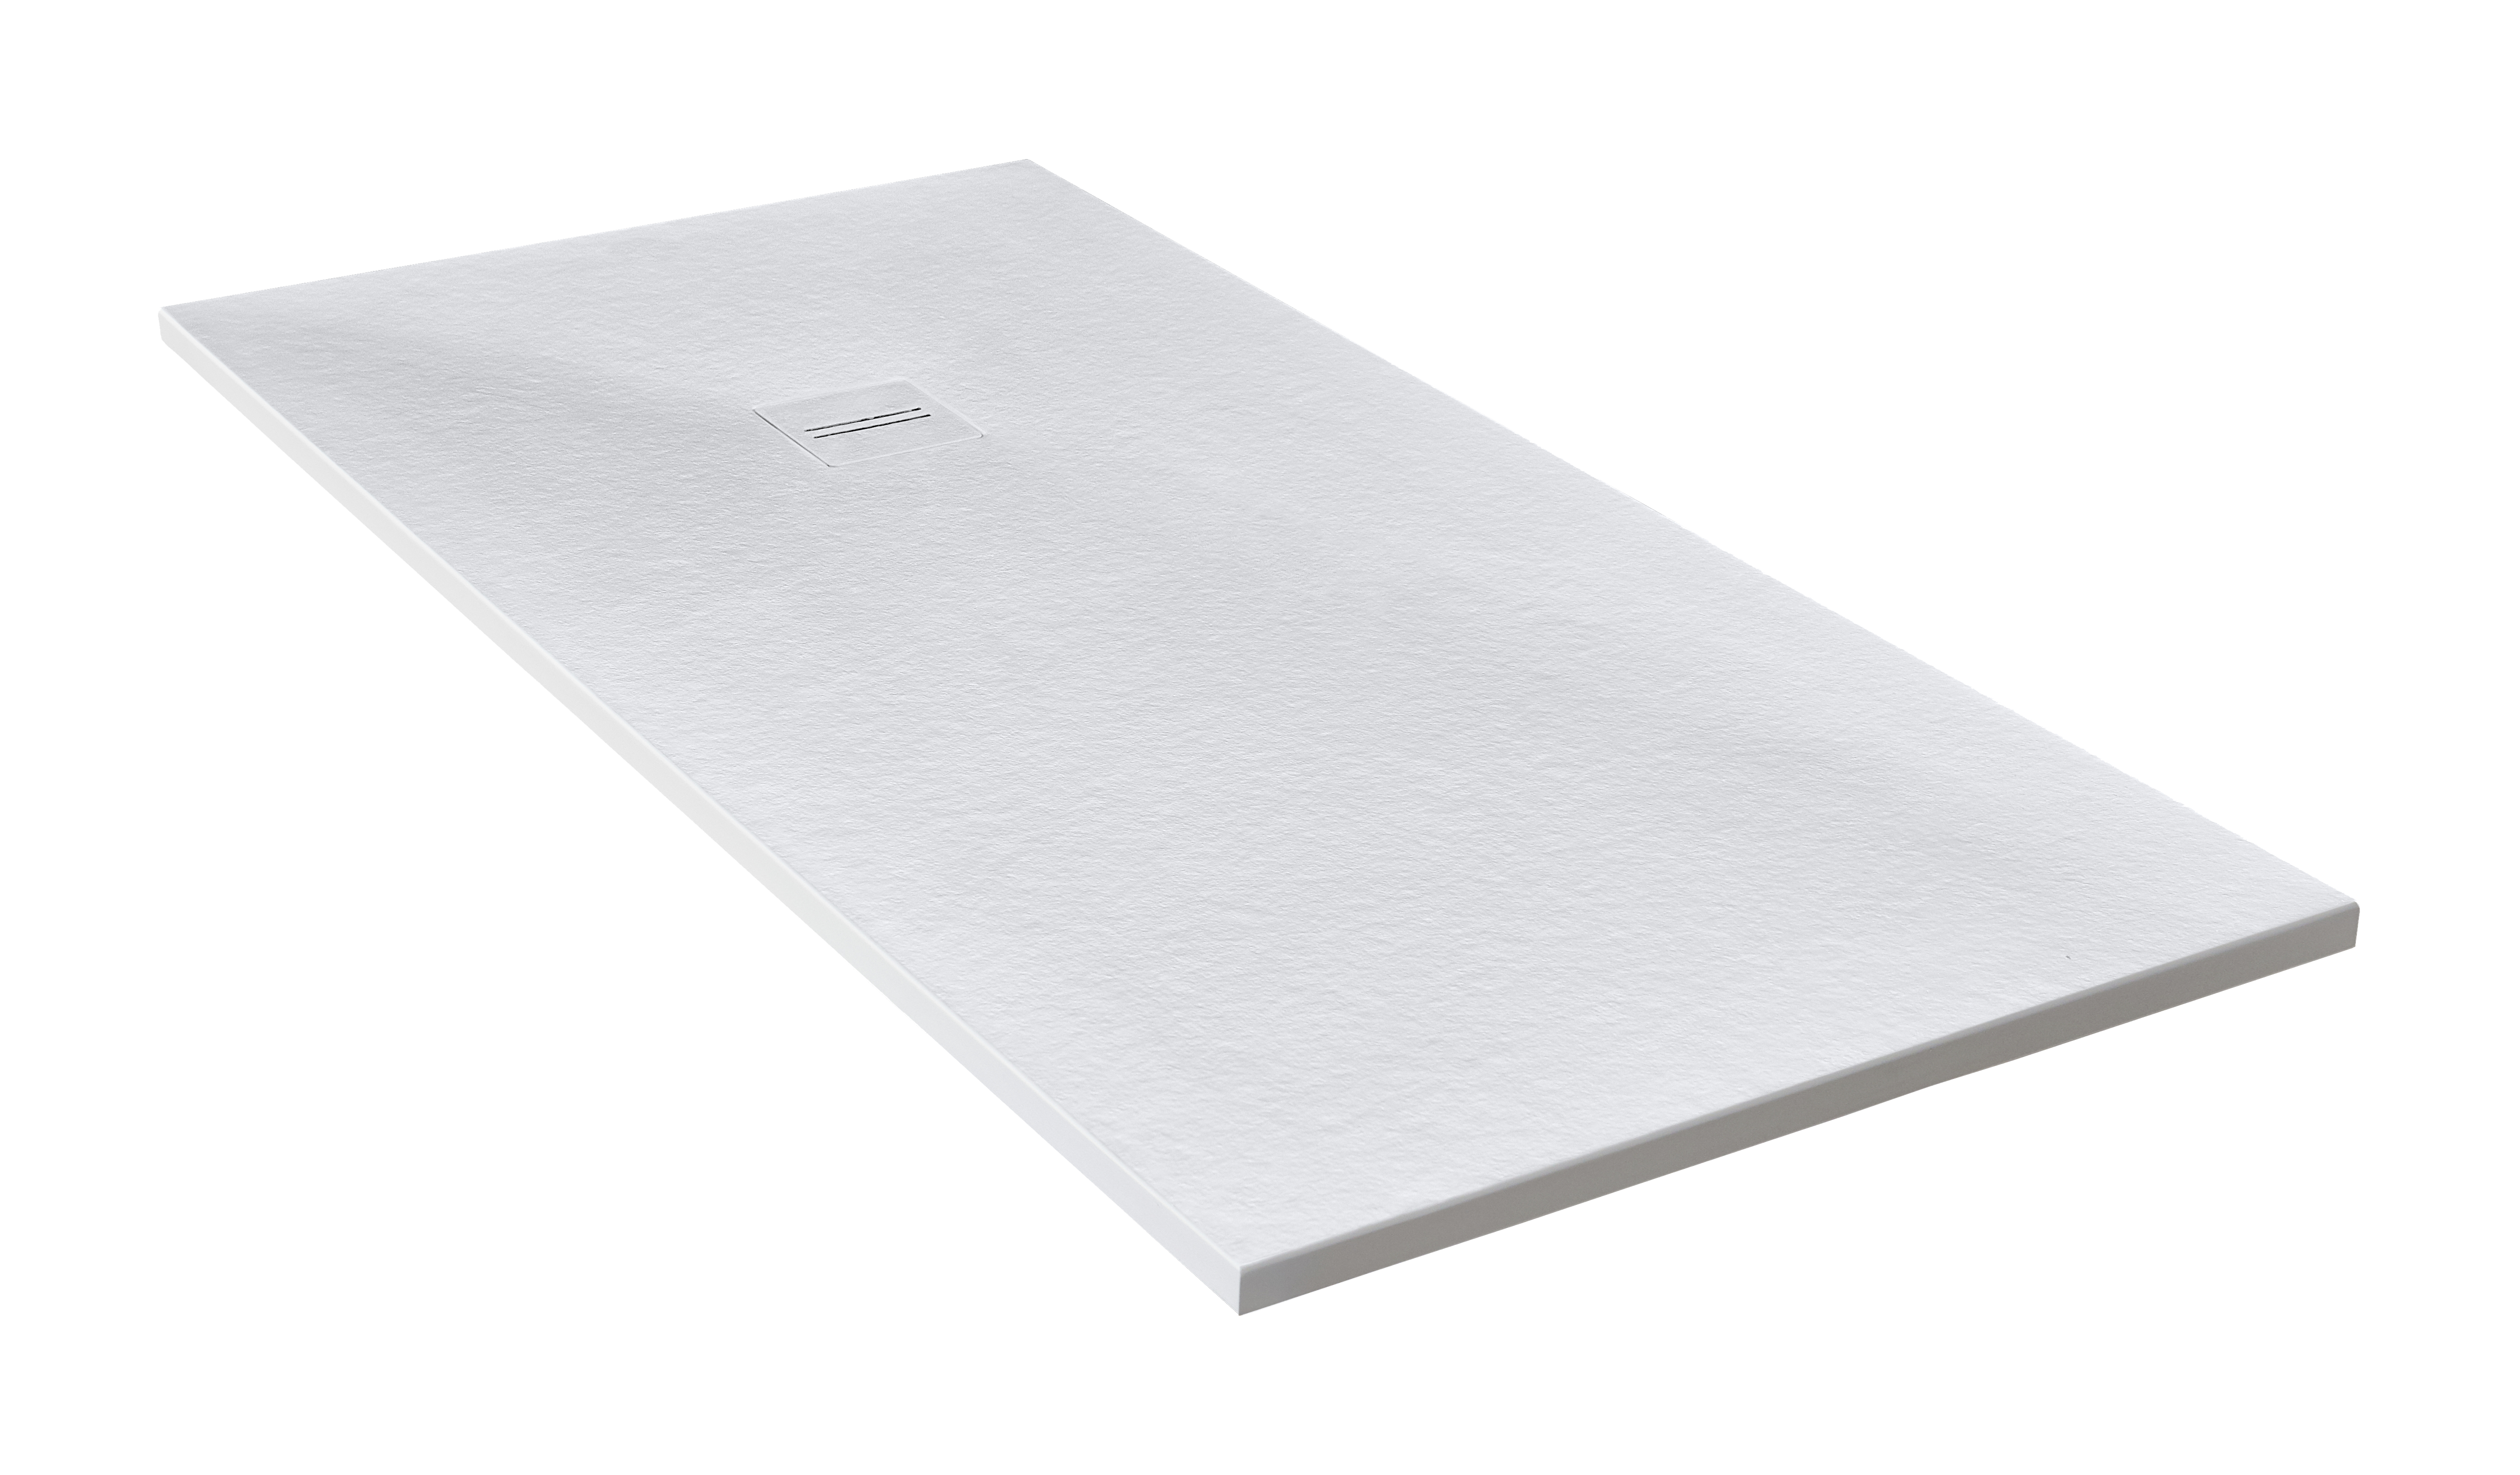 Plato de ducha cosmos 210x80 cm blanco